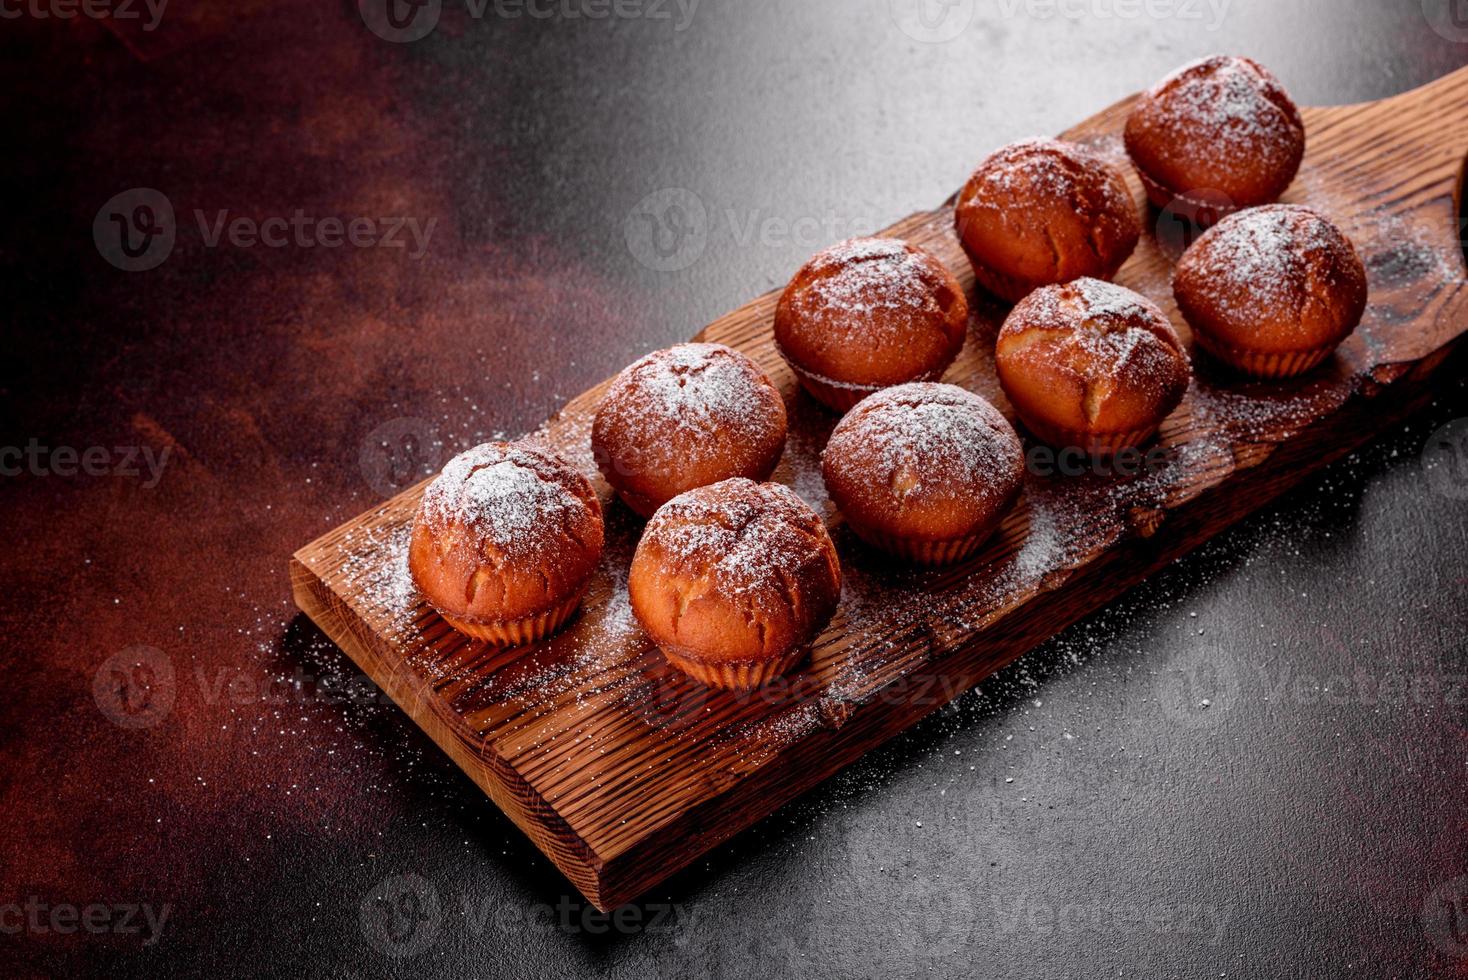 schöne leckere frische kakao muffins auf dem weihnachtstisch foto